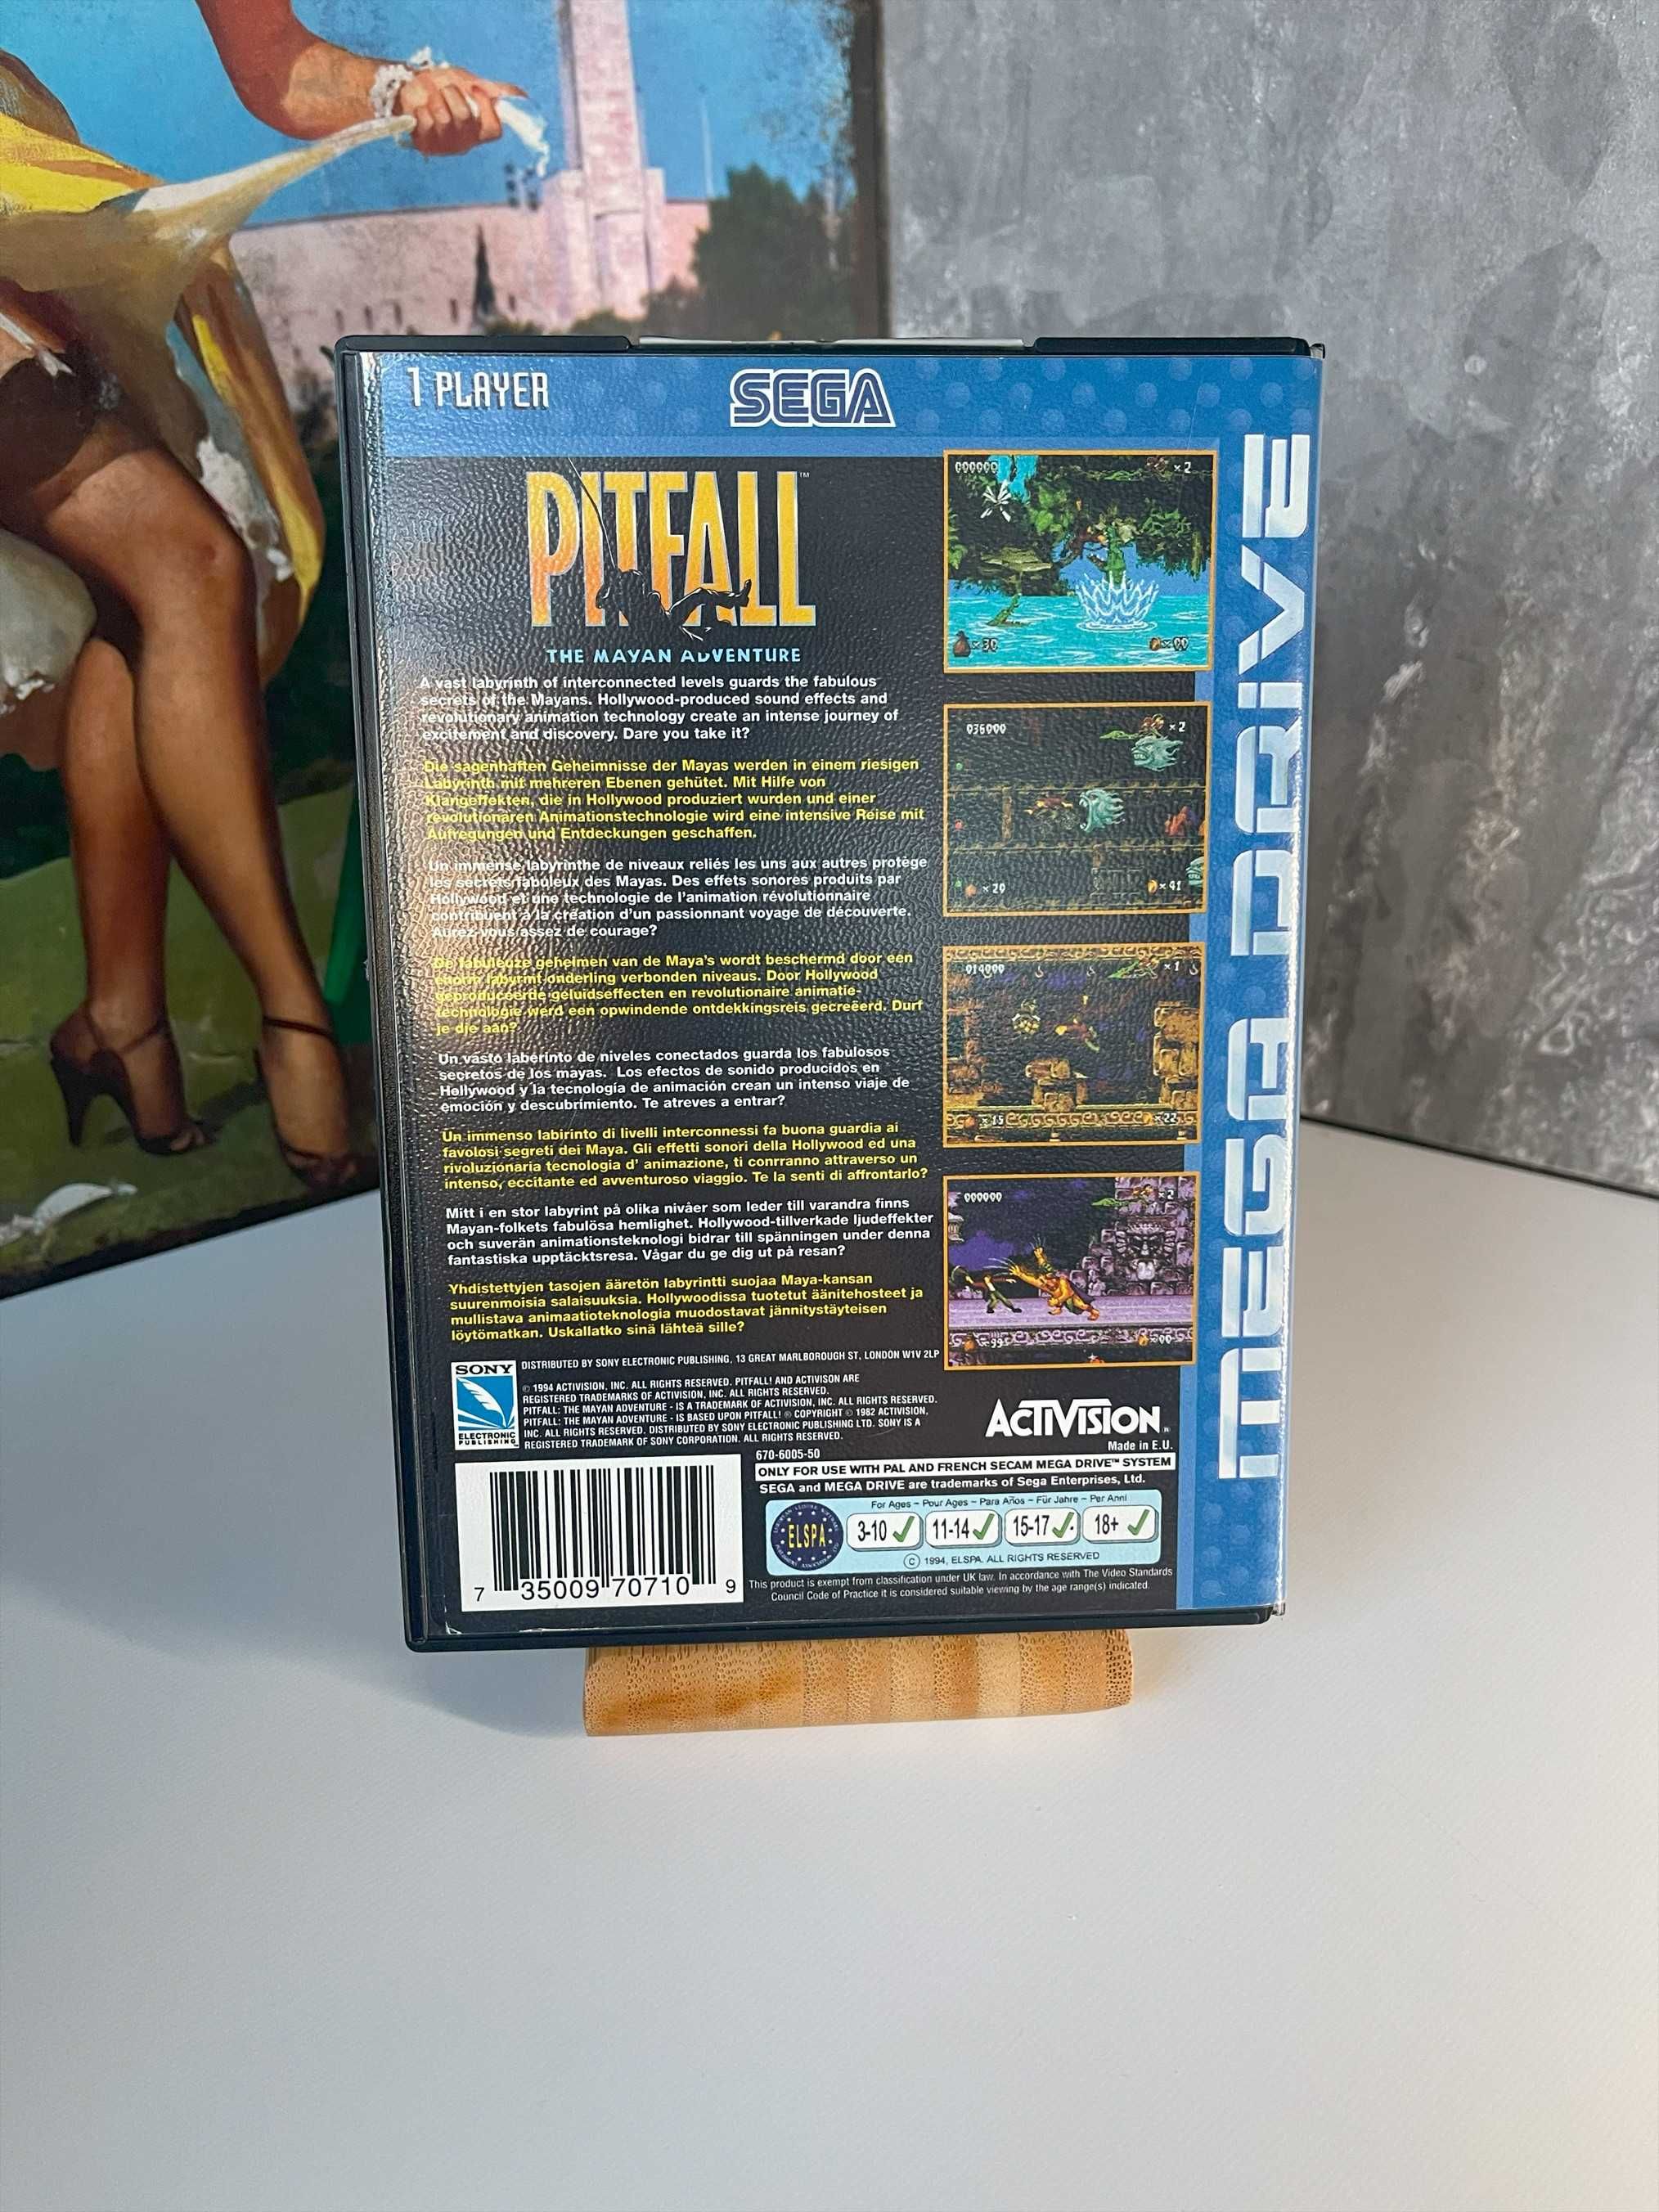 Pitfall The Mayan Adventure - Sega Mega Drive / Genesis